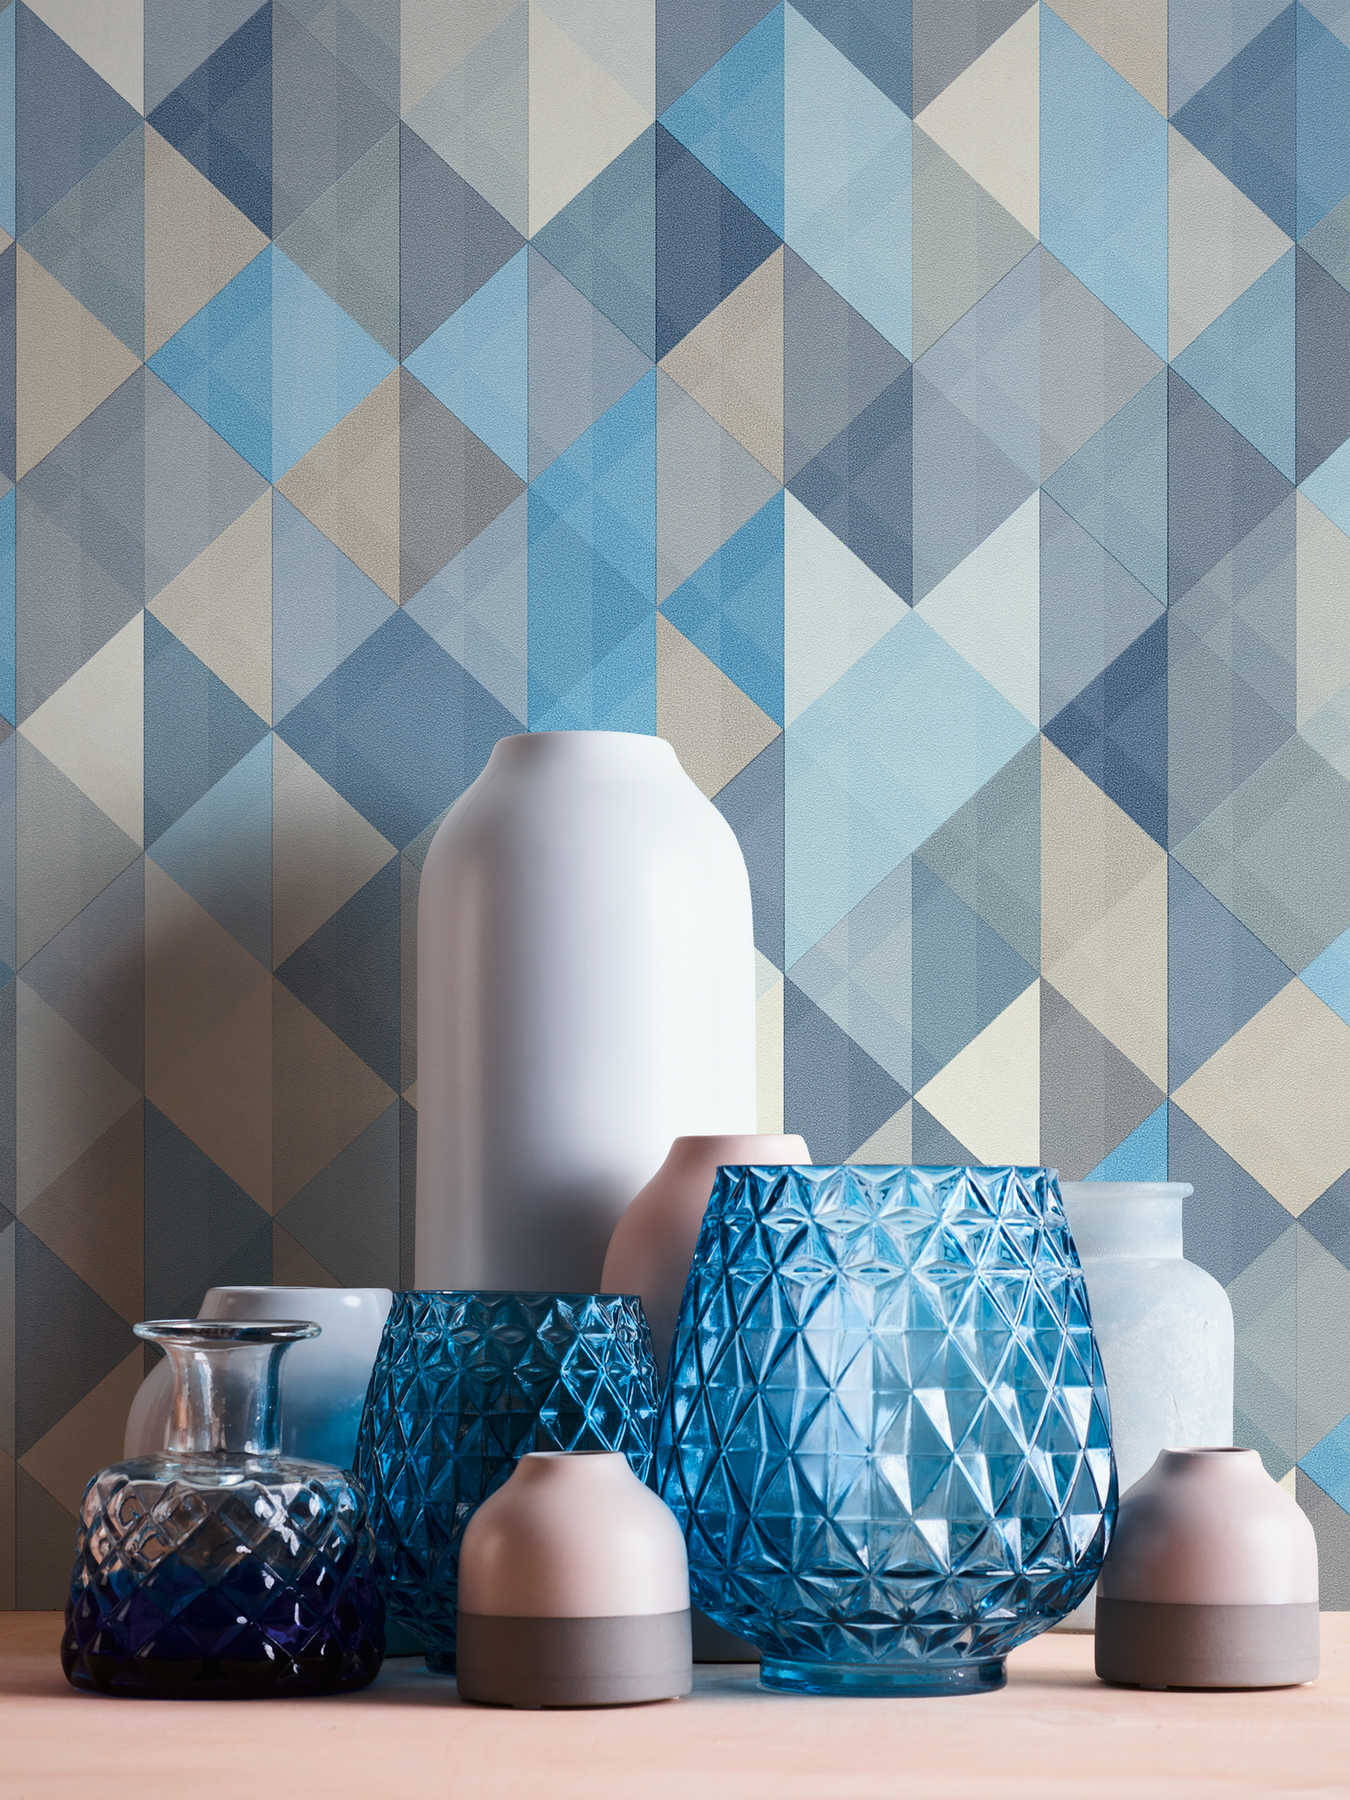             Papel pintado de estilo escandinavo con motivos geométricos - azul, gris, beige
        